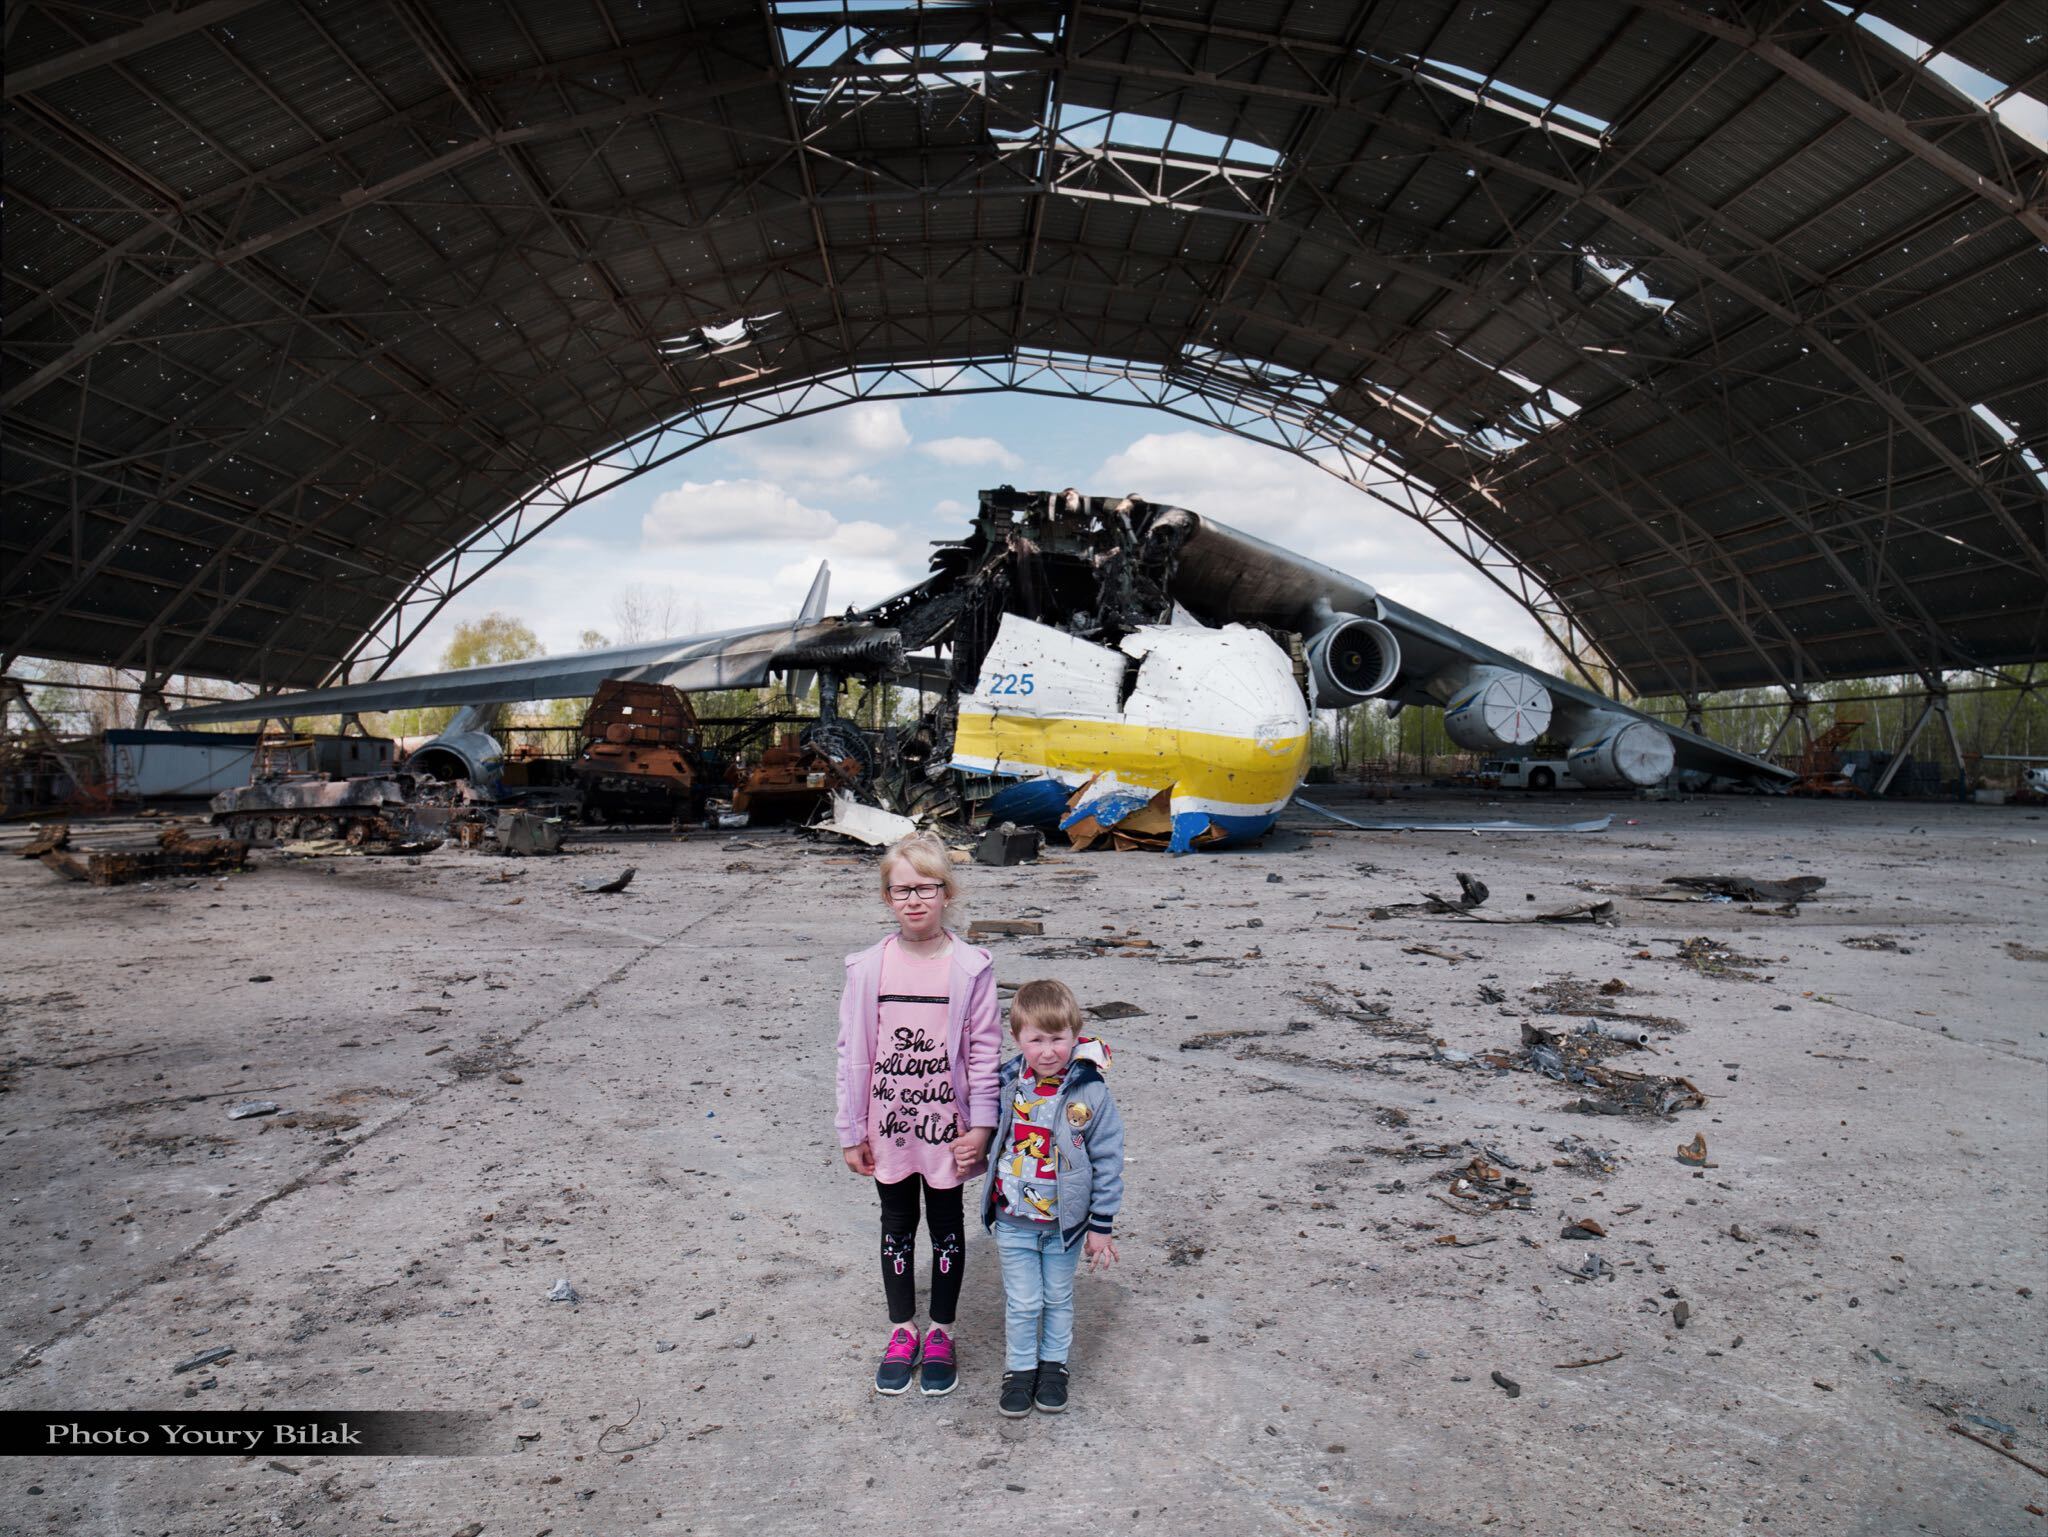 Єгор та Анастасія біля зруйнованого найбільшого у світі літака Ан-225 «Мрія» у Гостомелі. Фото: Юрій Білак